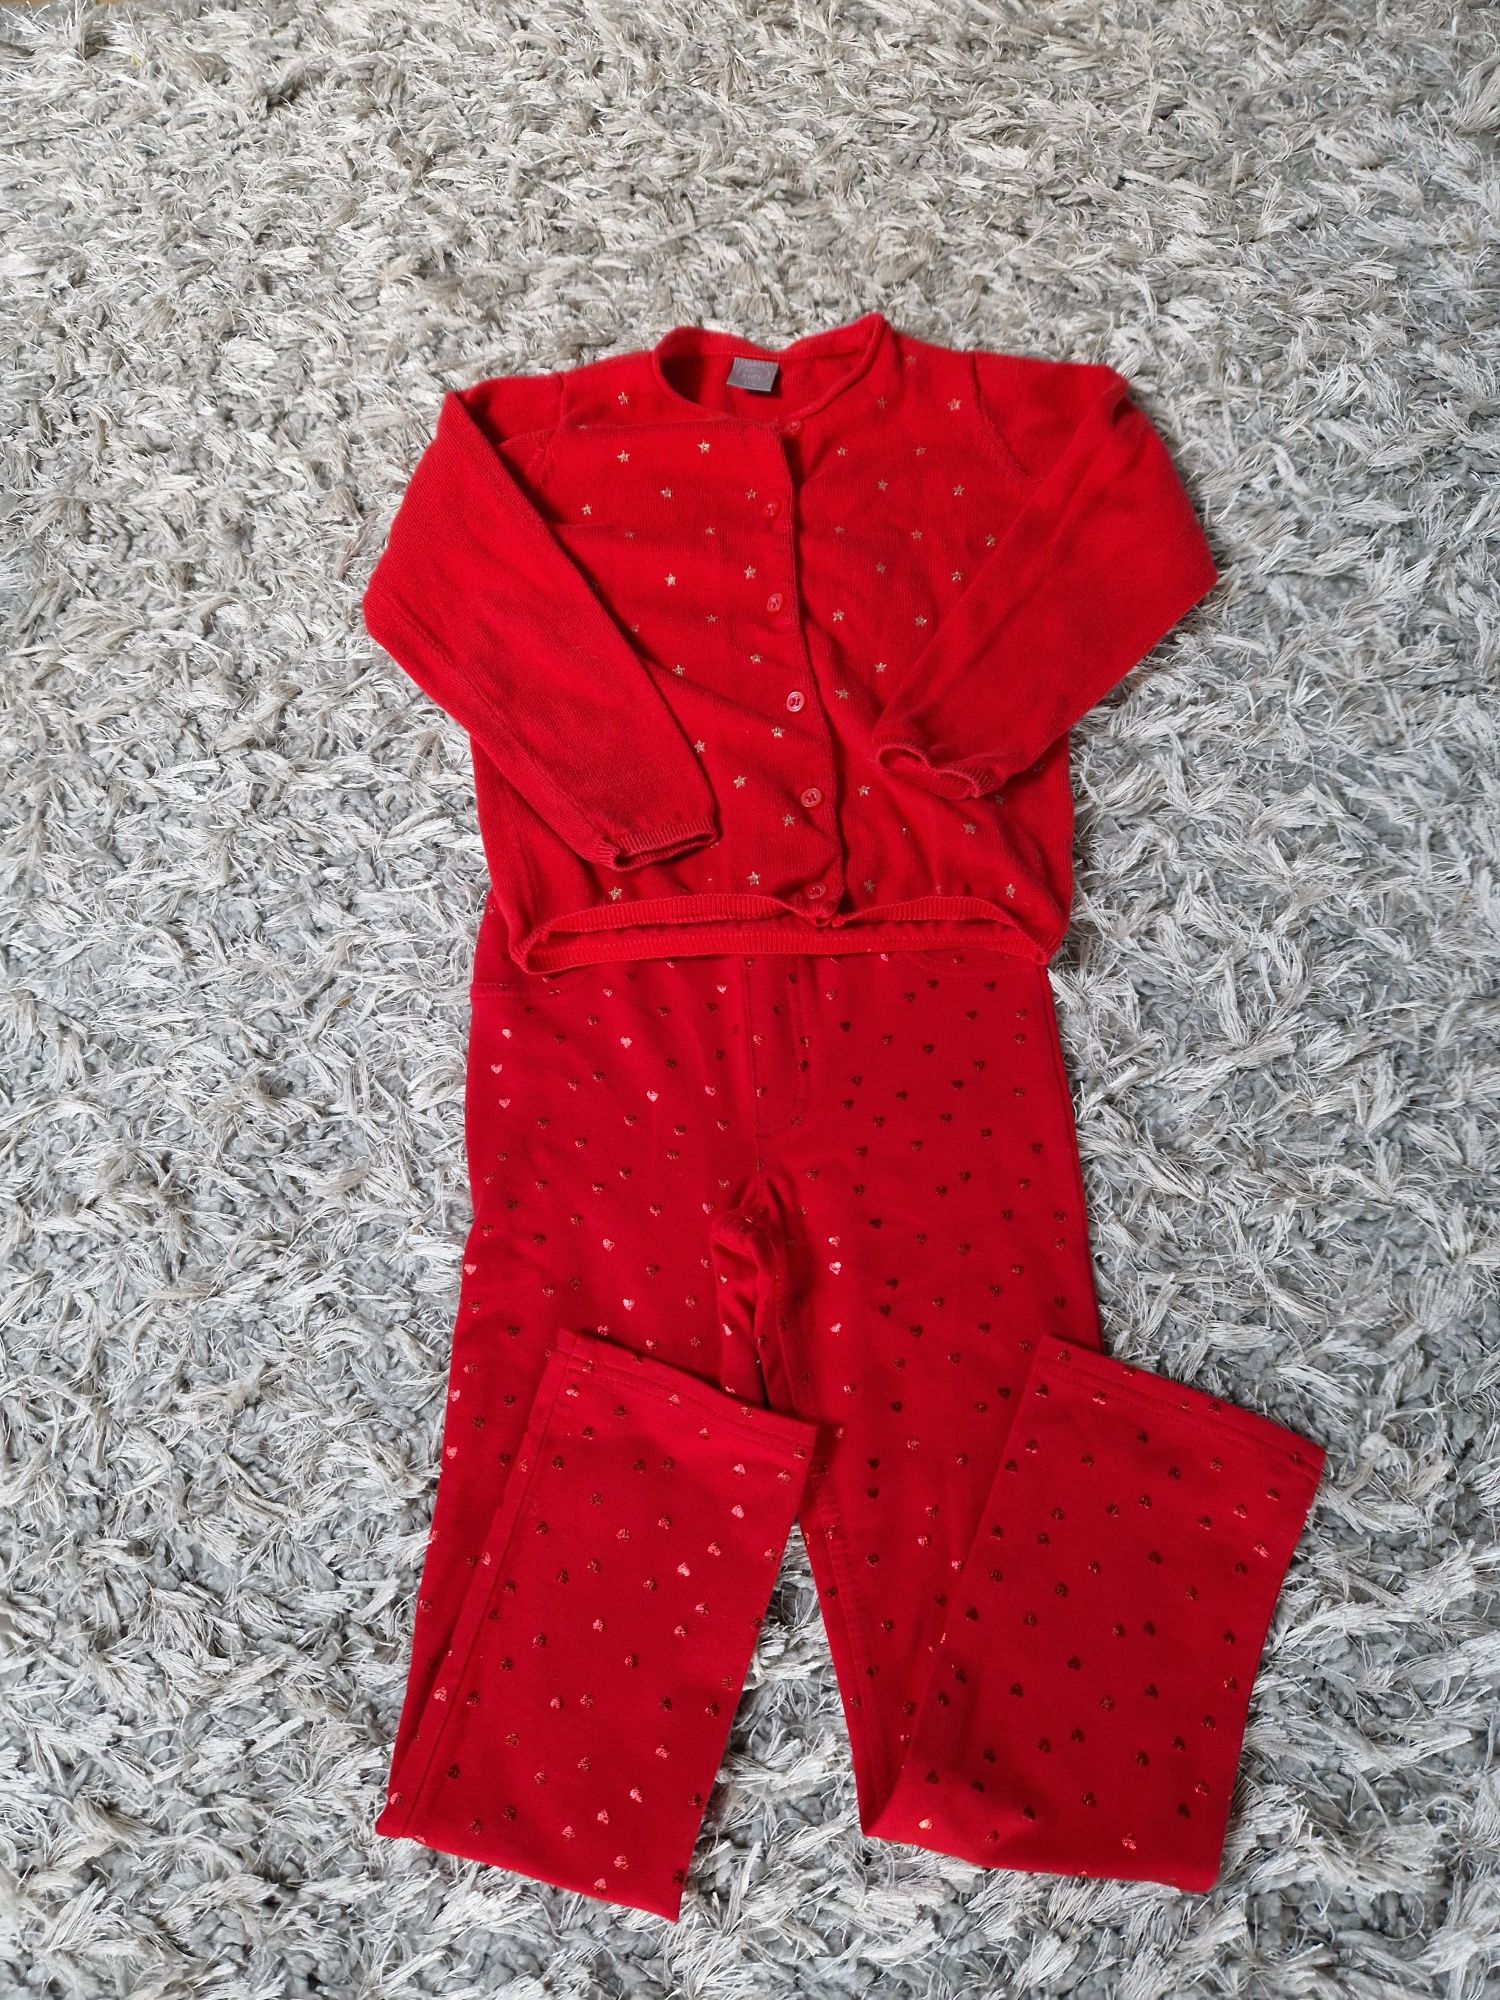 Komplet czerwony sweterek + czerwone spodnie